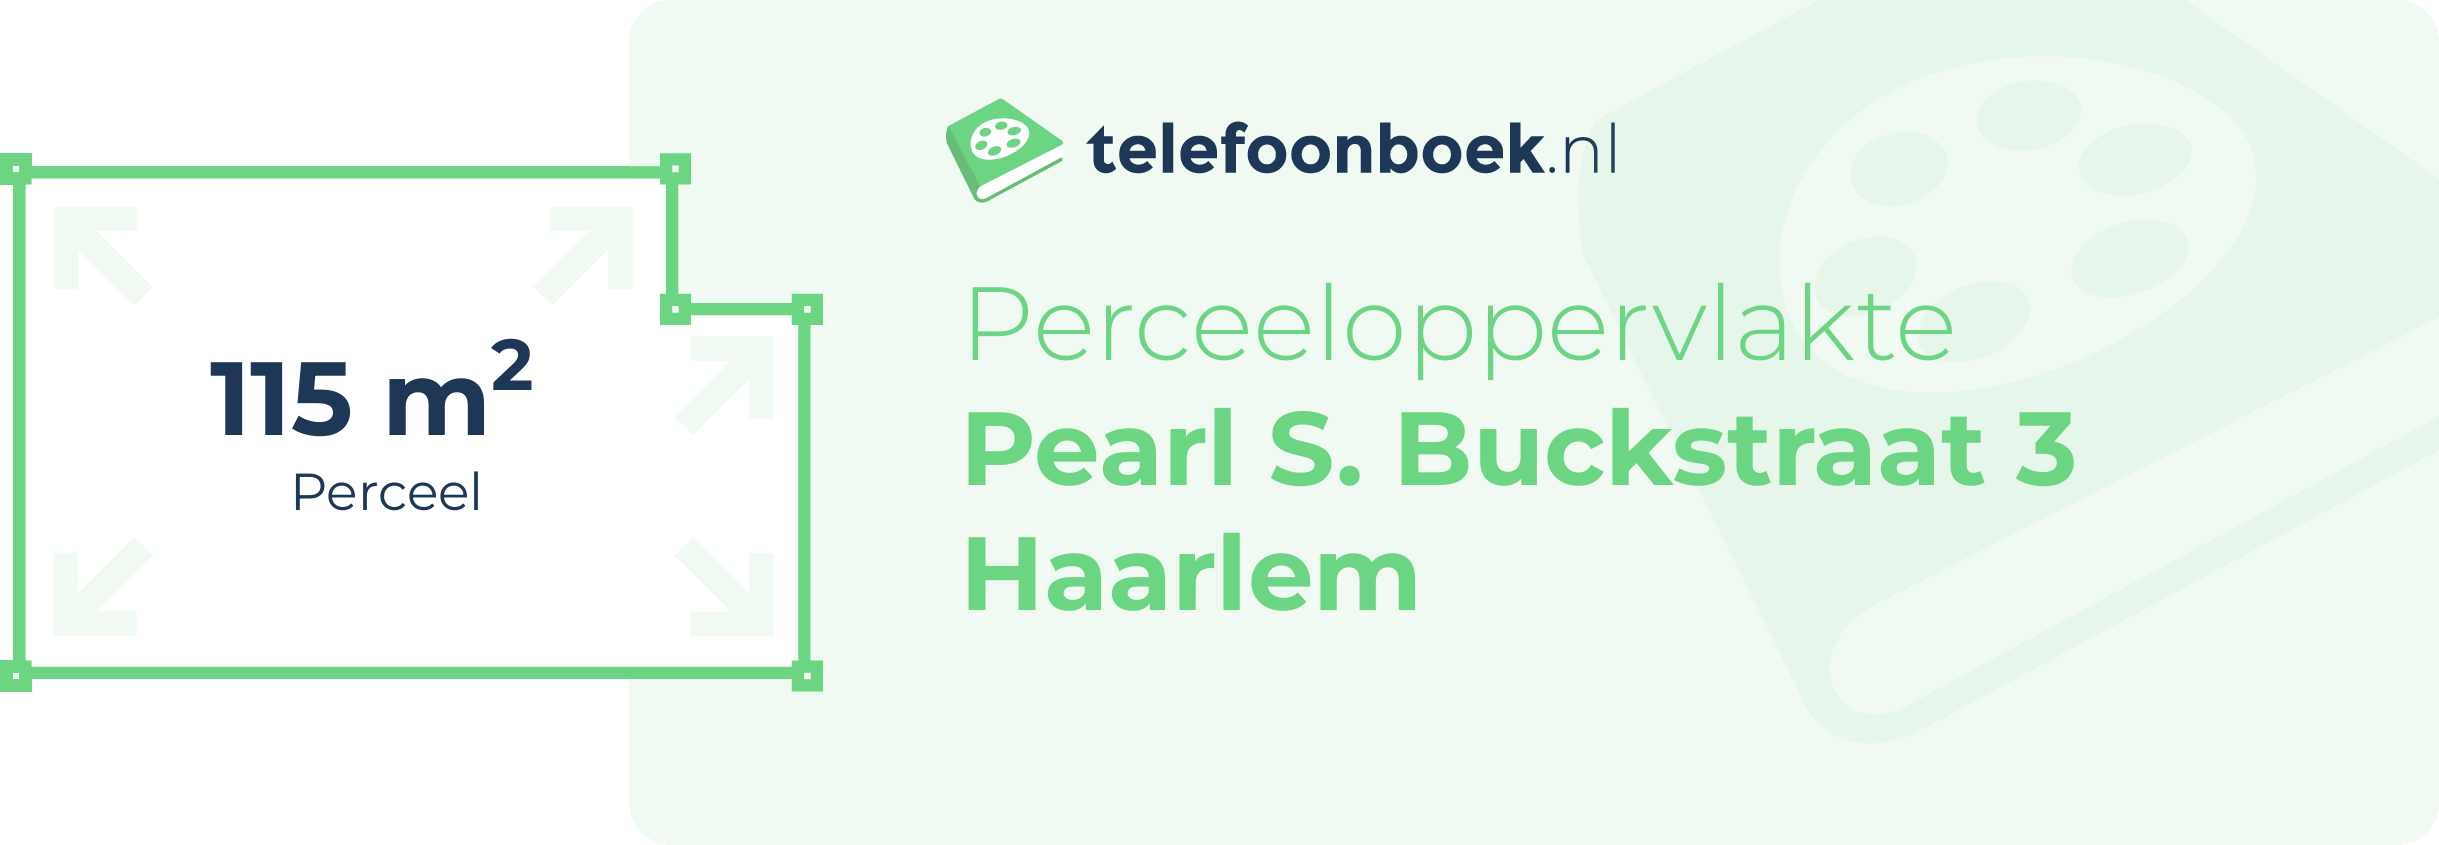 Perceeloppervlakte Pearl S. Buckstraat 3 Haarlem